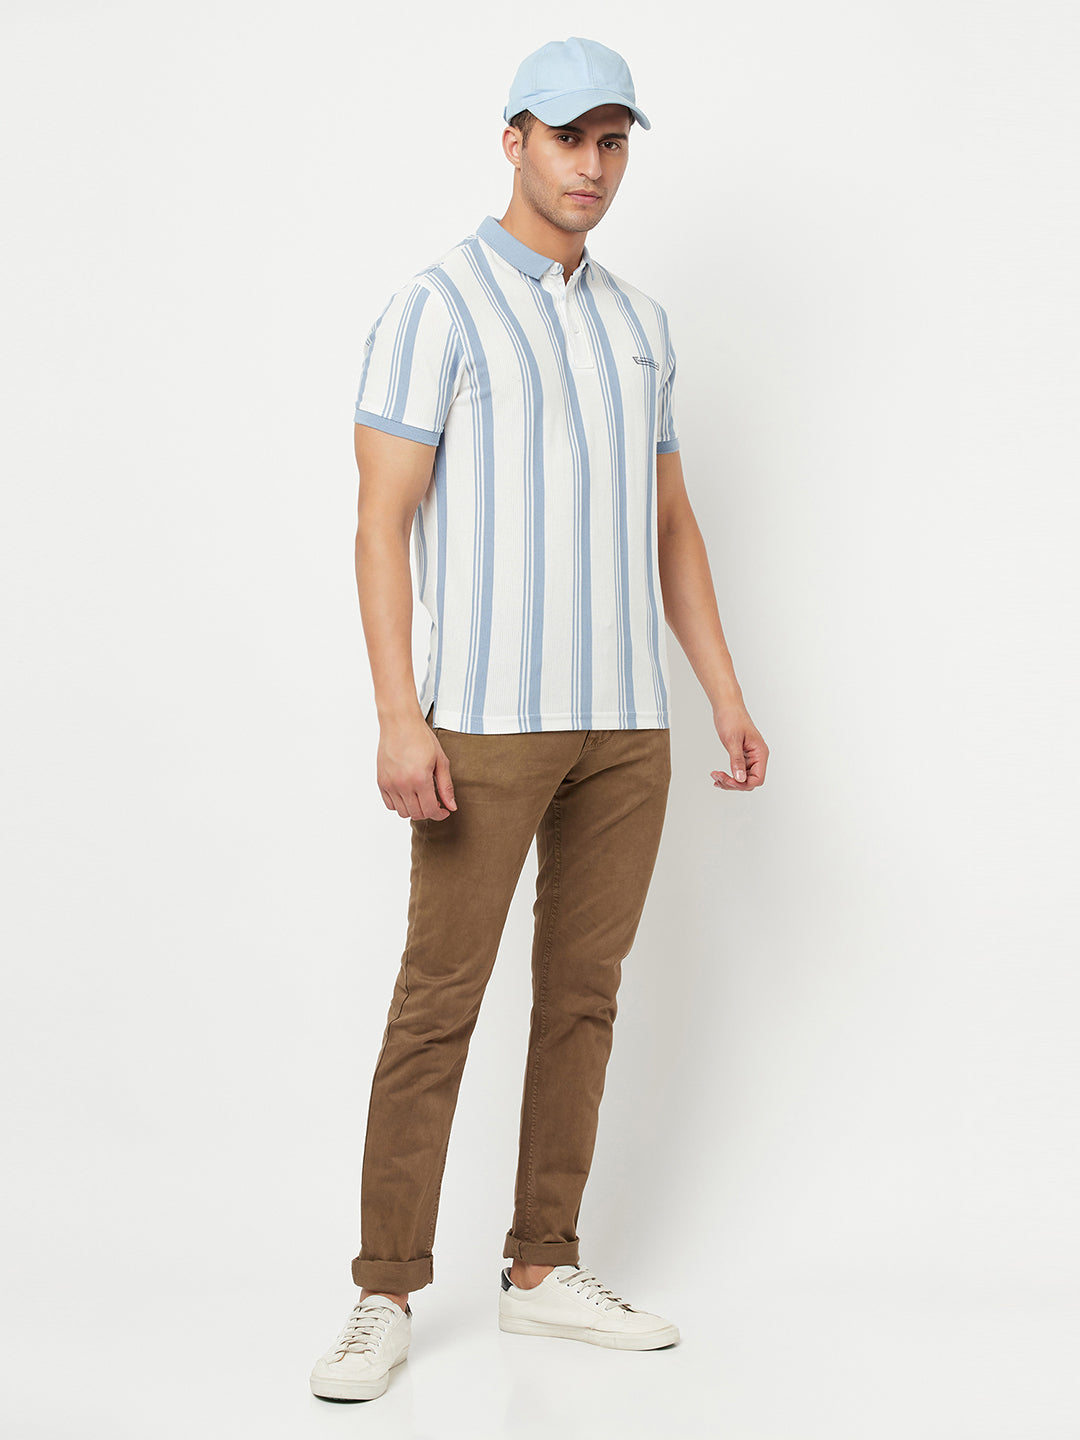 White Striped Polo T-Shirt - Men T-Shirts